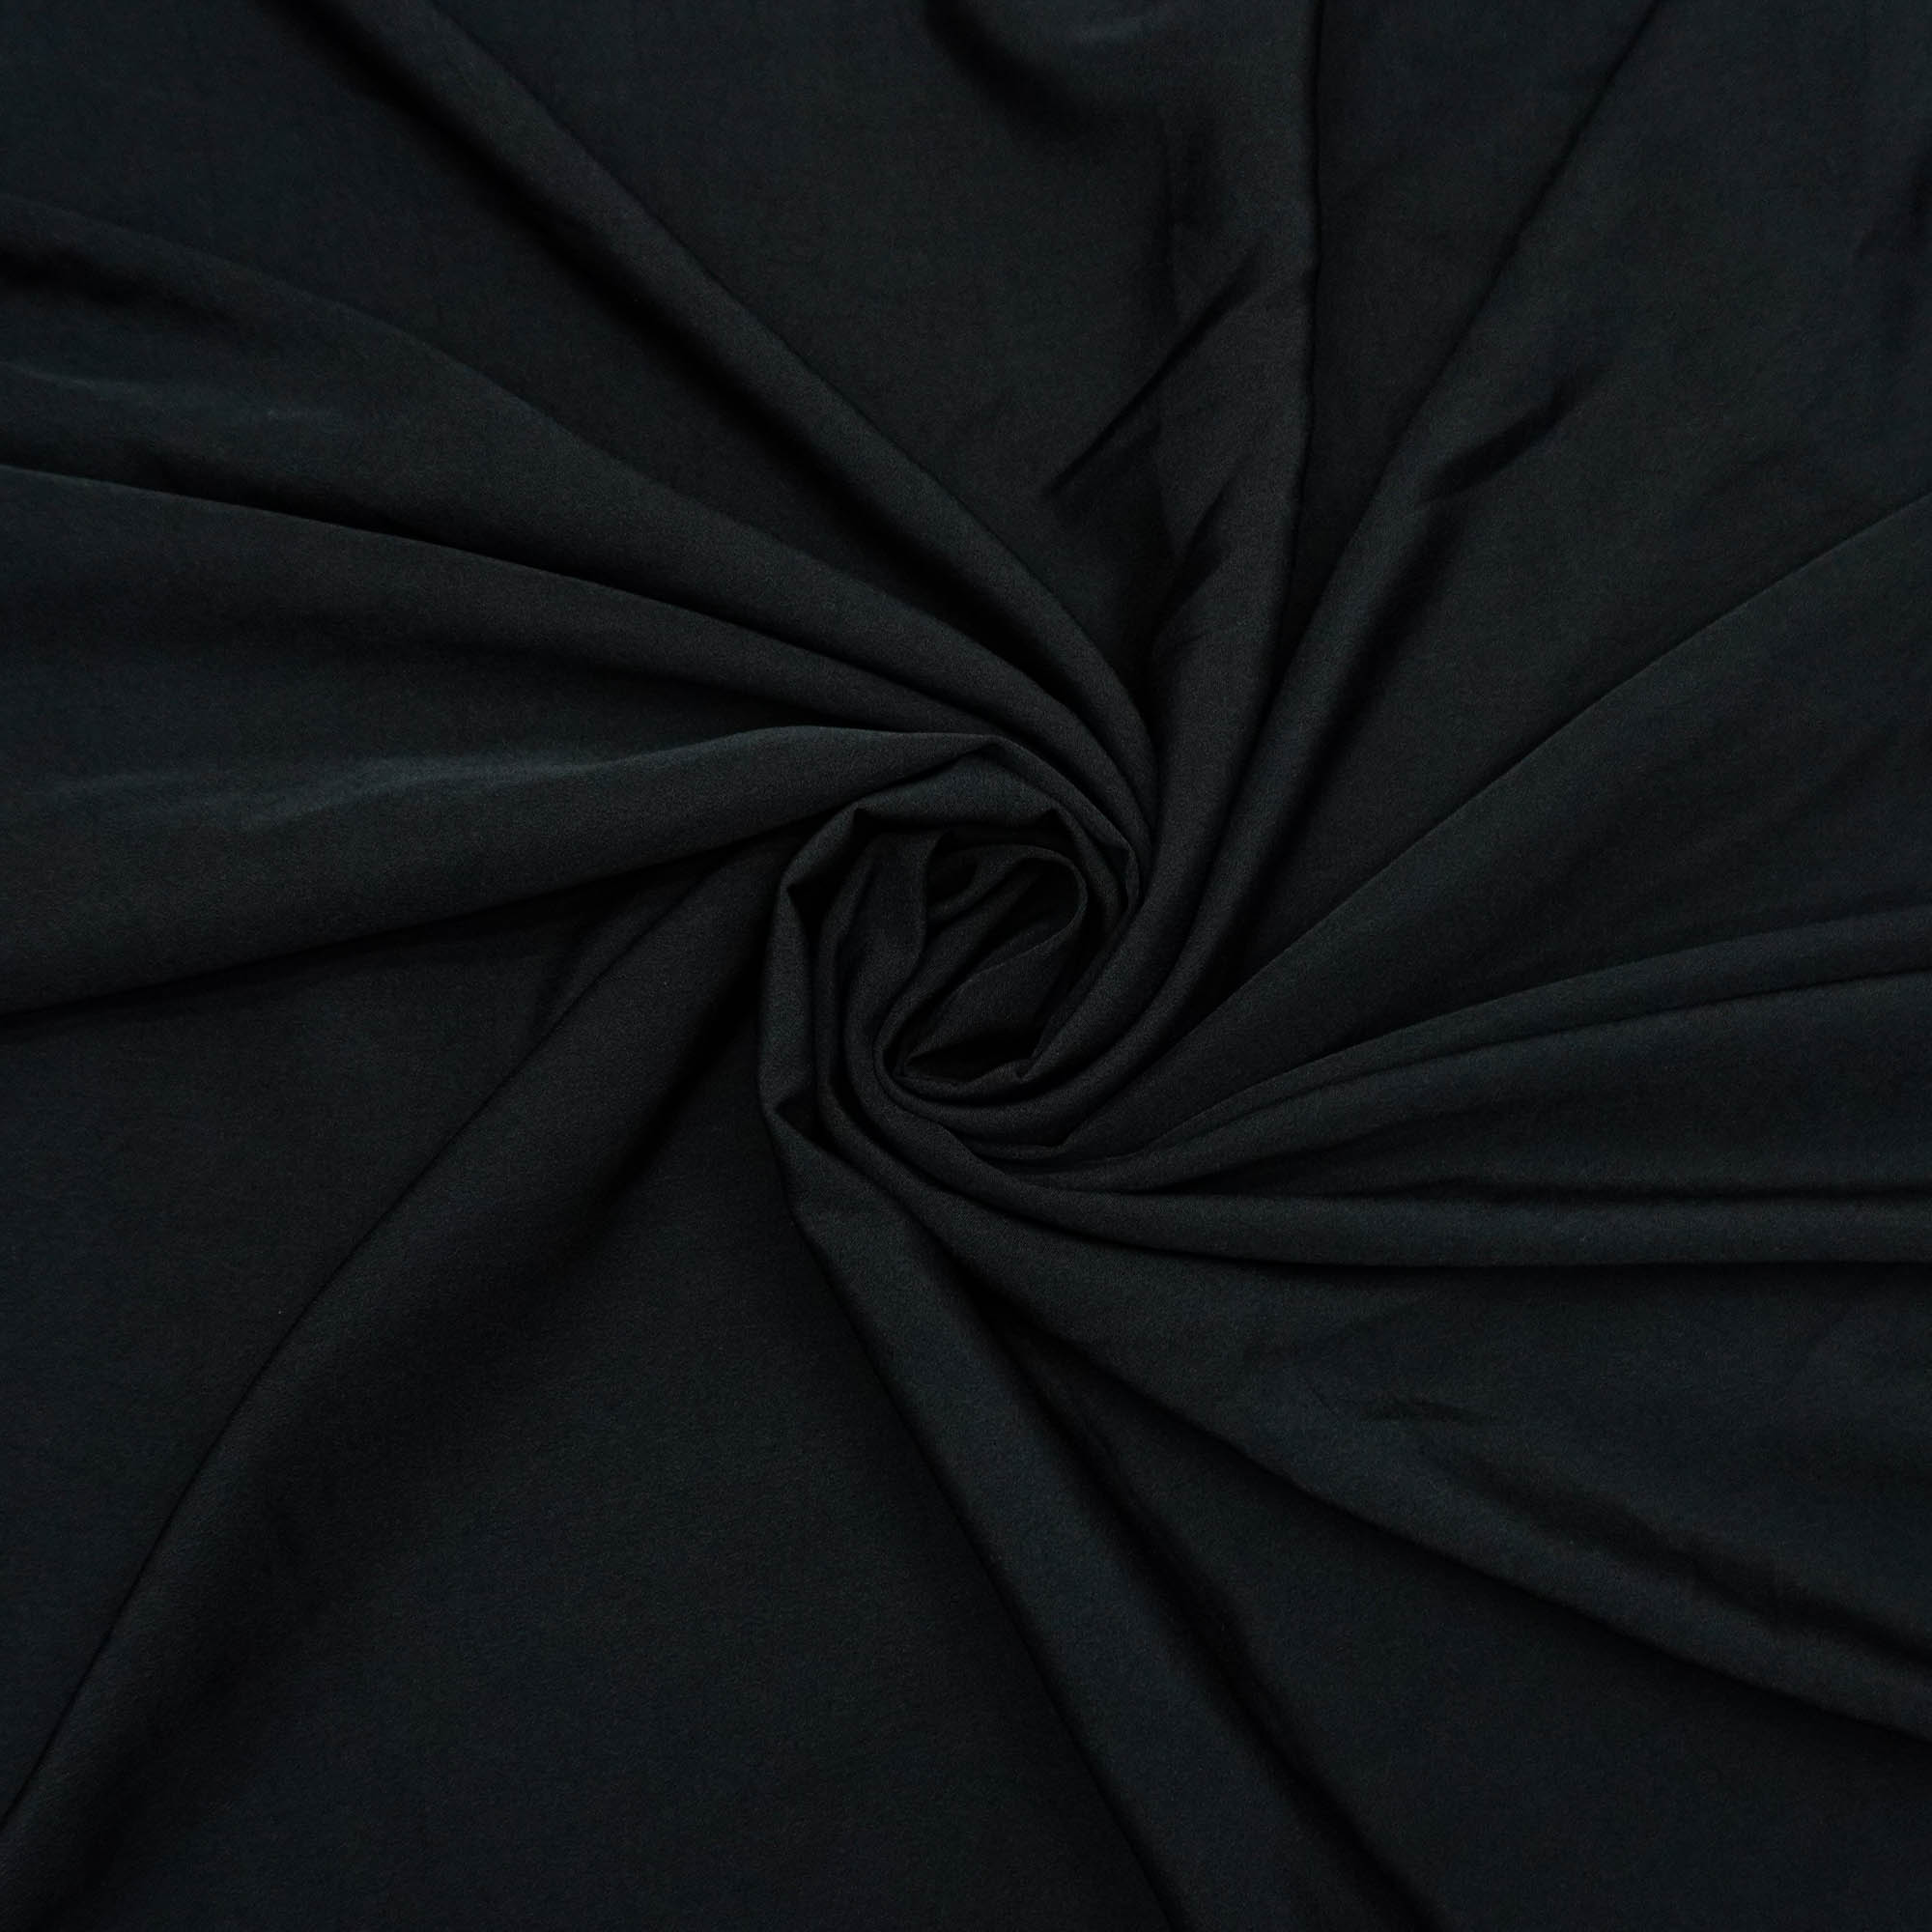 Tecido forro 100% poliester para tecido leve preto